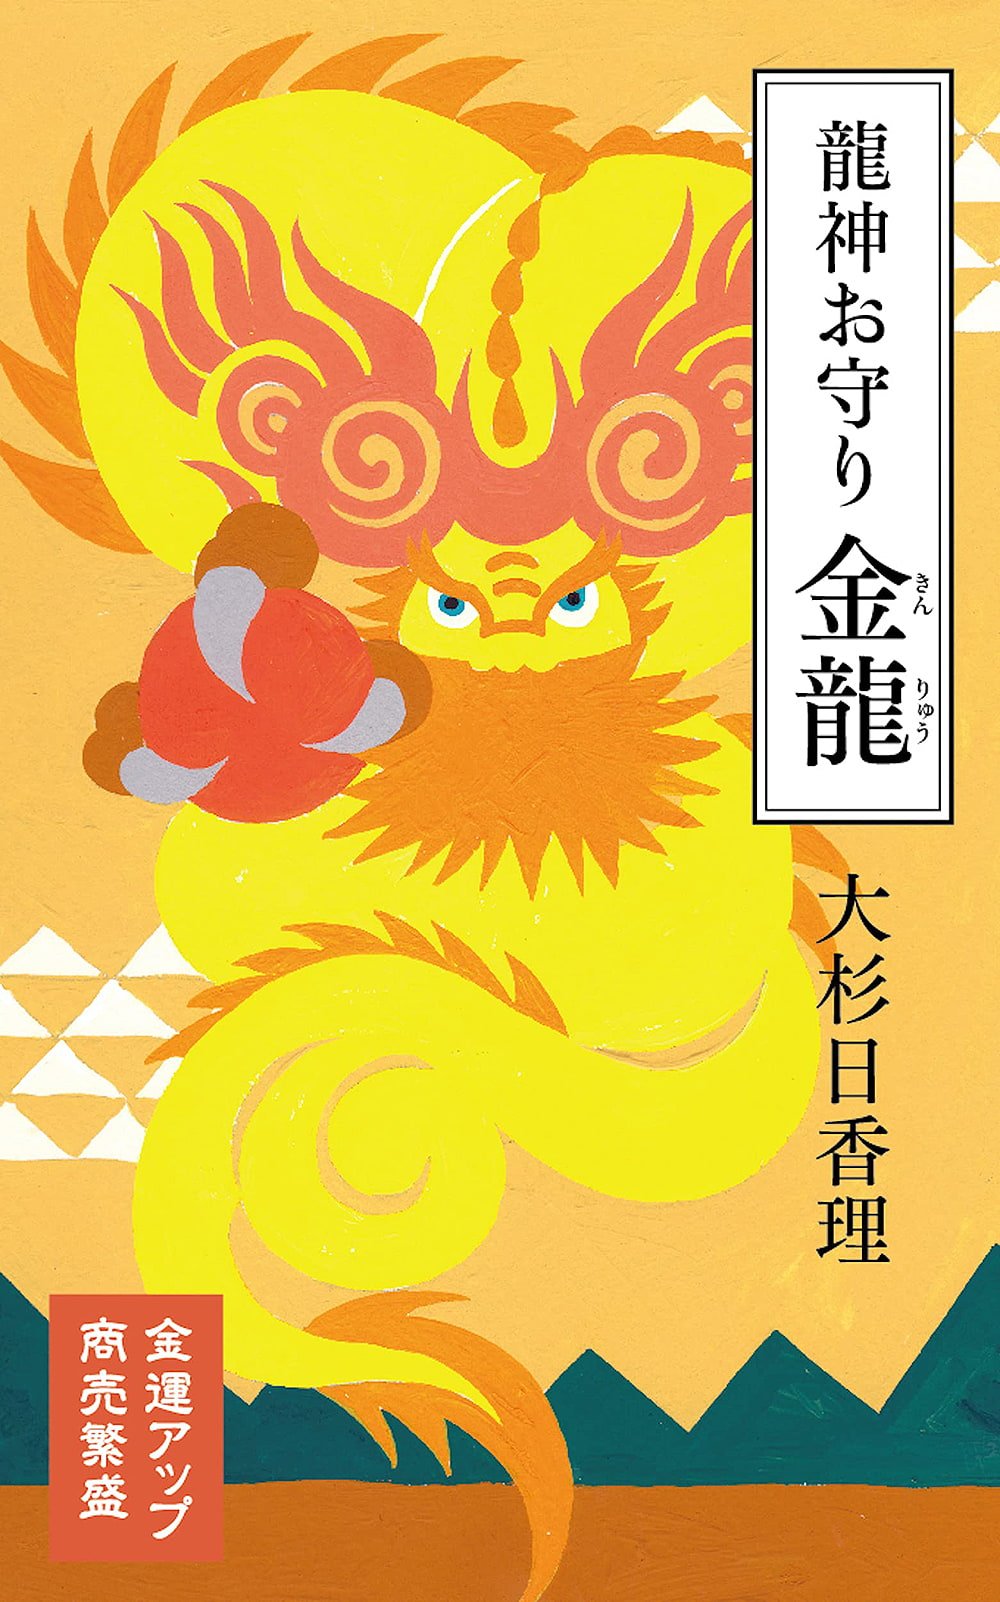 龍神お守り 金龍 Dragon God Amulet Kinryu / オラクルカード 関連品 占い カード占い タロット 河出書房新社 ルノルマン スピリチュア